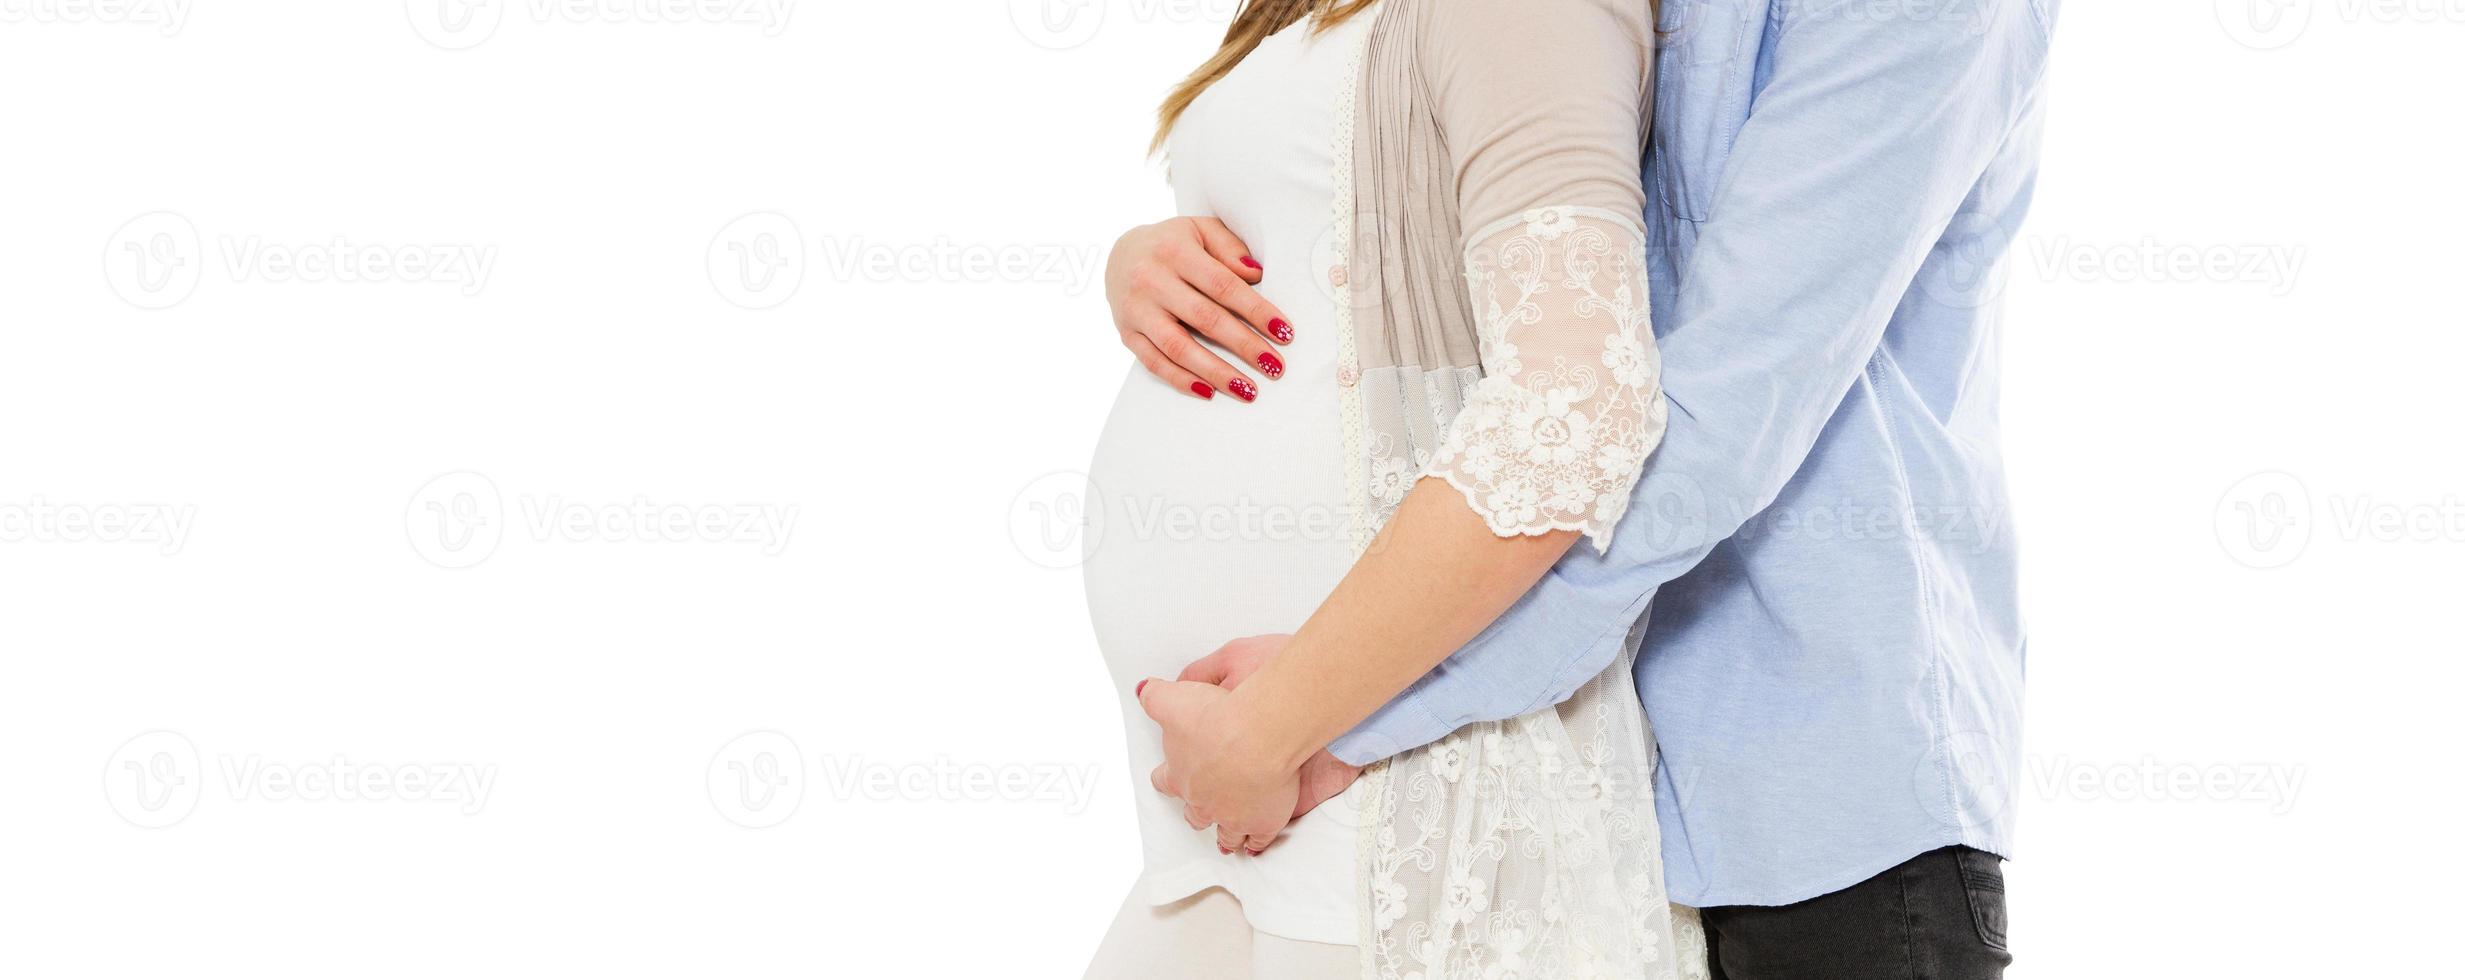 begreppet graviditet, väntar barn, kärlek, omsorg - beskuren bild av ung gravid kvinna och hennes man foto